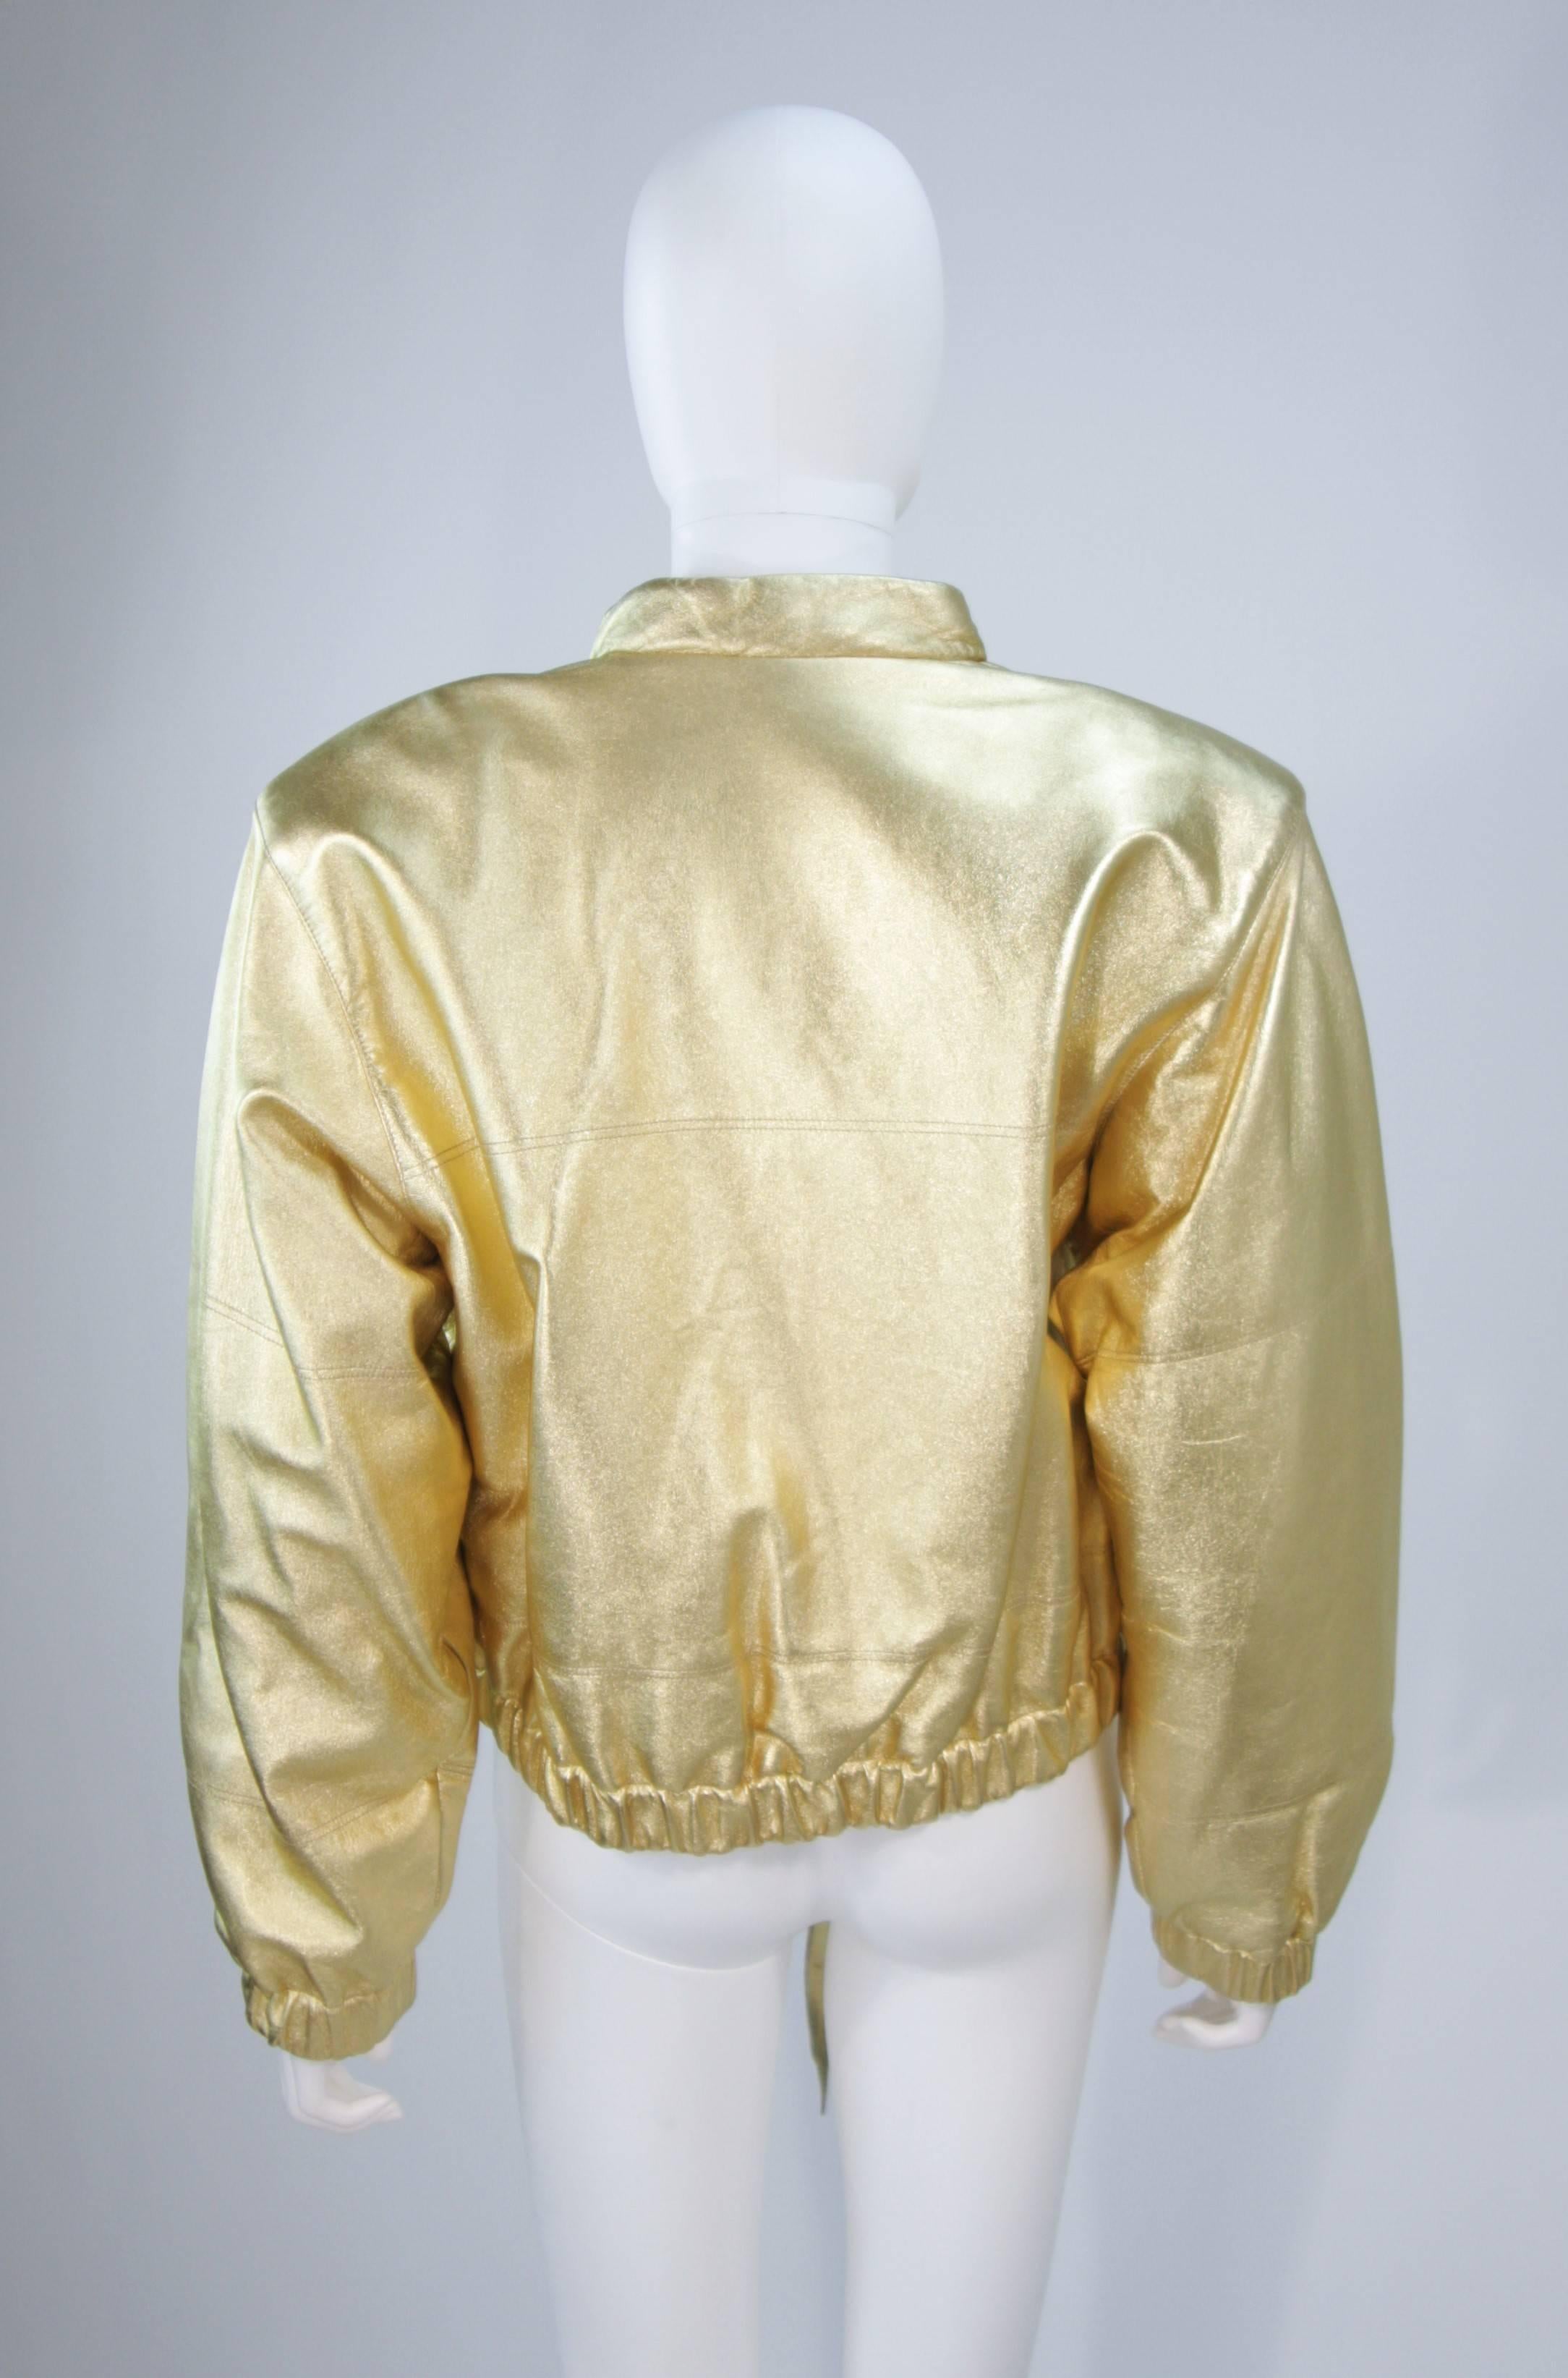 YVES SAINT LAURENT Gold Metallic Leather Bomber Style Jacket Size 6 3